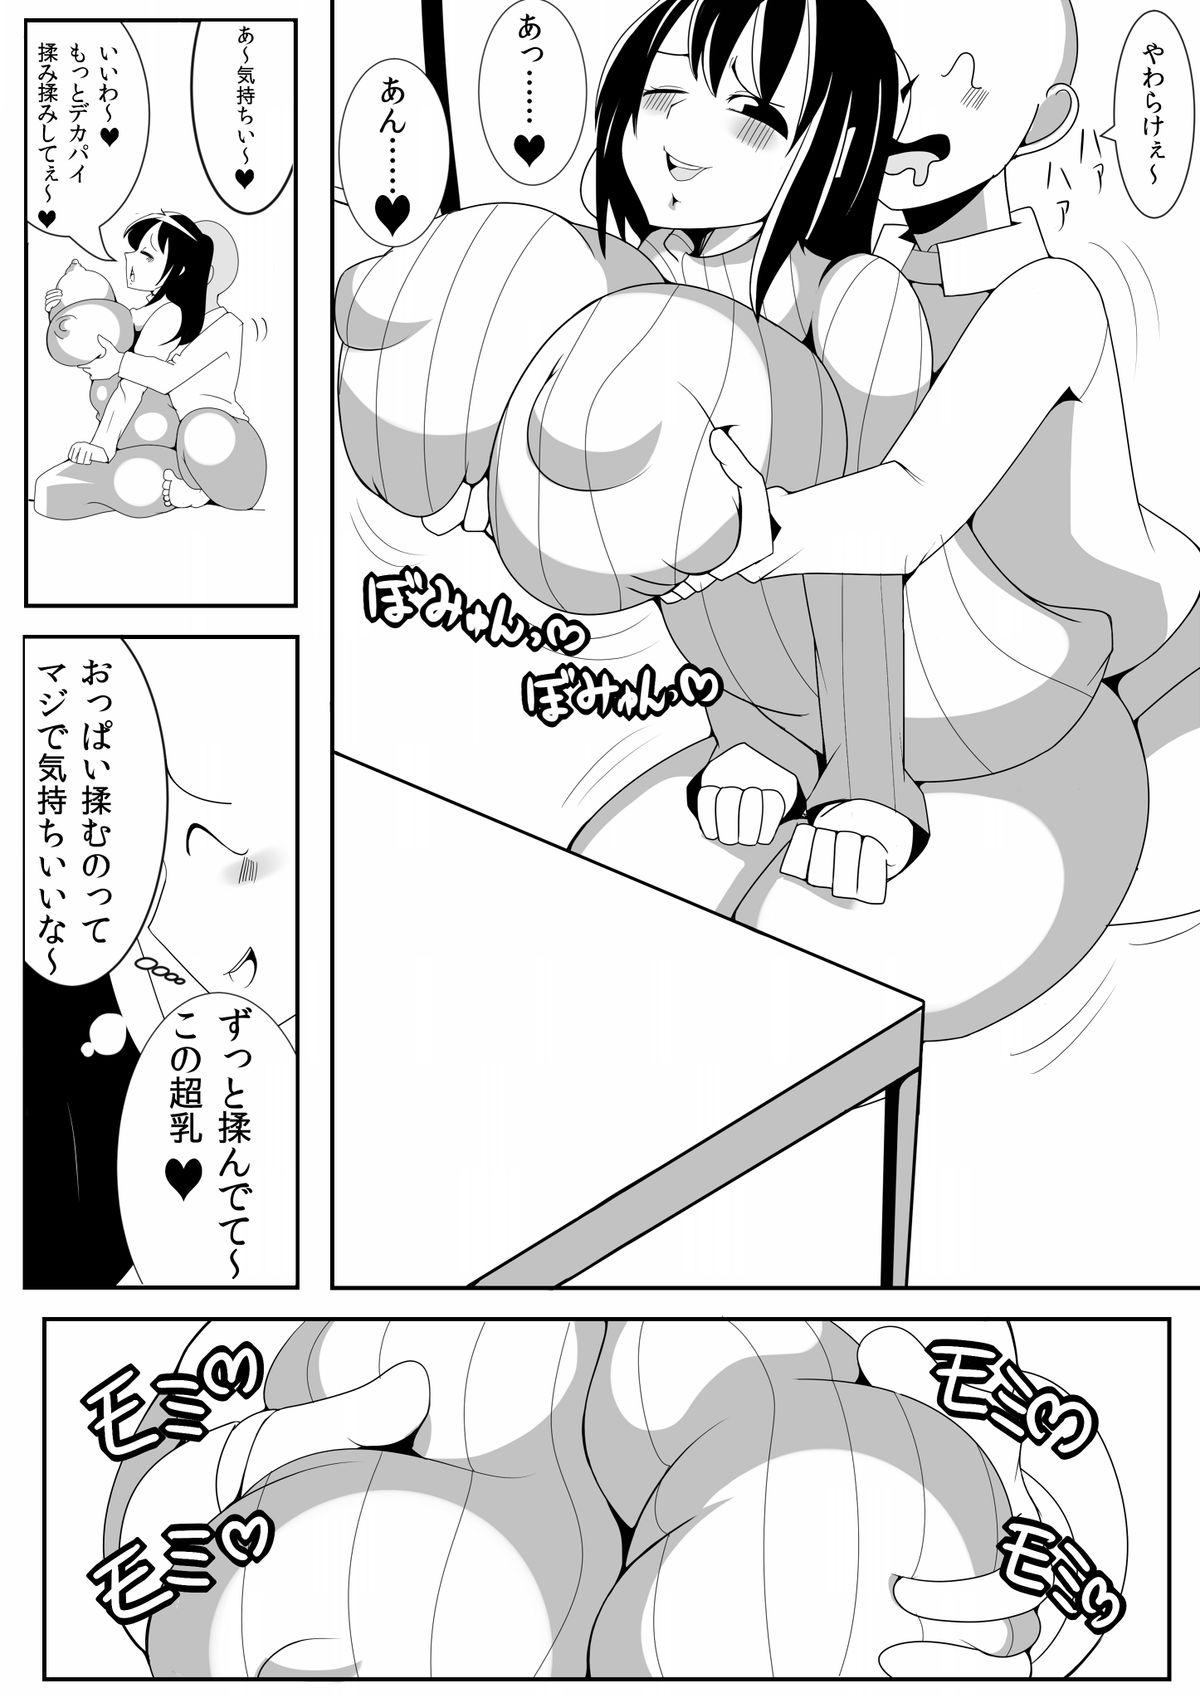 Mms Asaokitara Oppai Konnani ga Okkiku Nacchatta First Time - Page 8